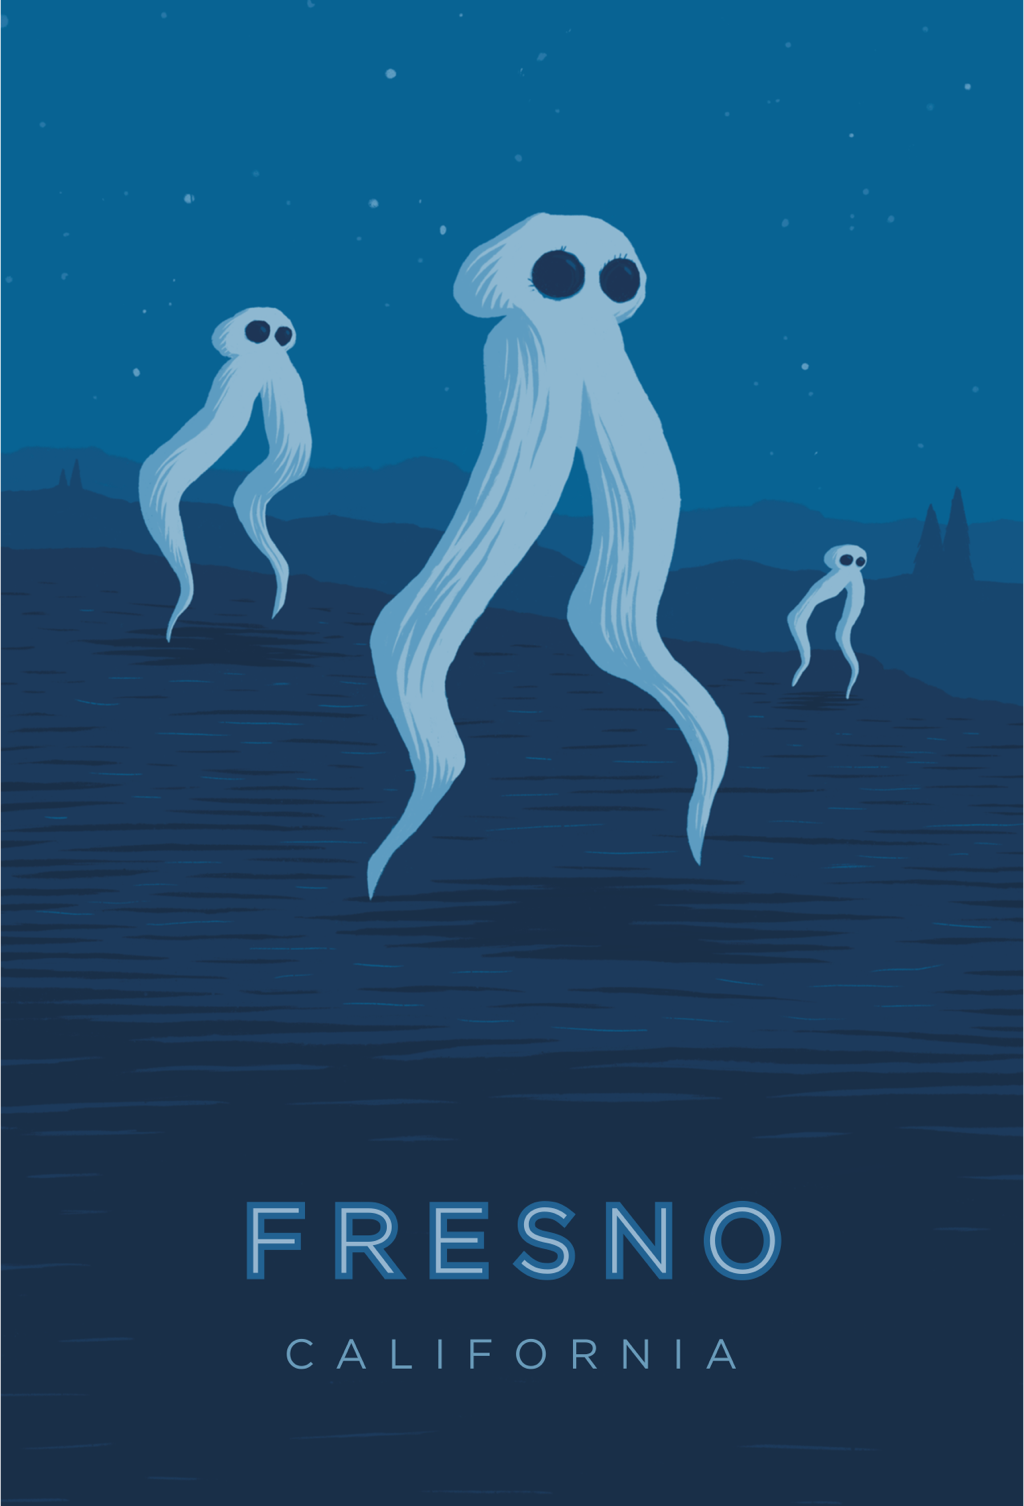 Fresno California Travel Poster 4x6